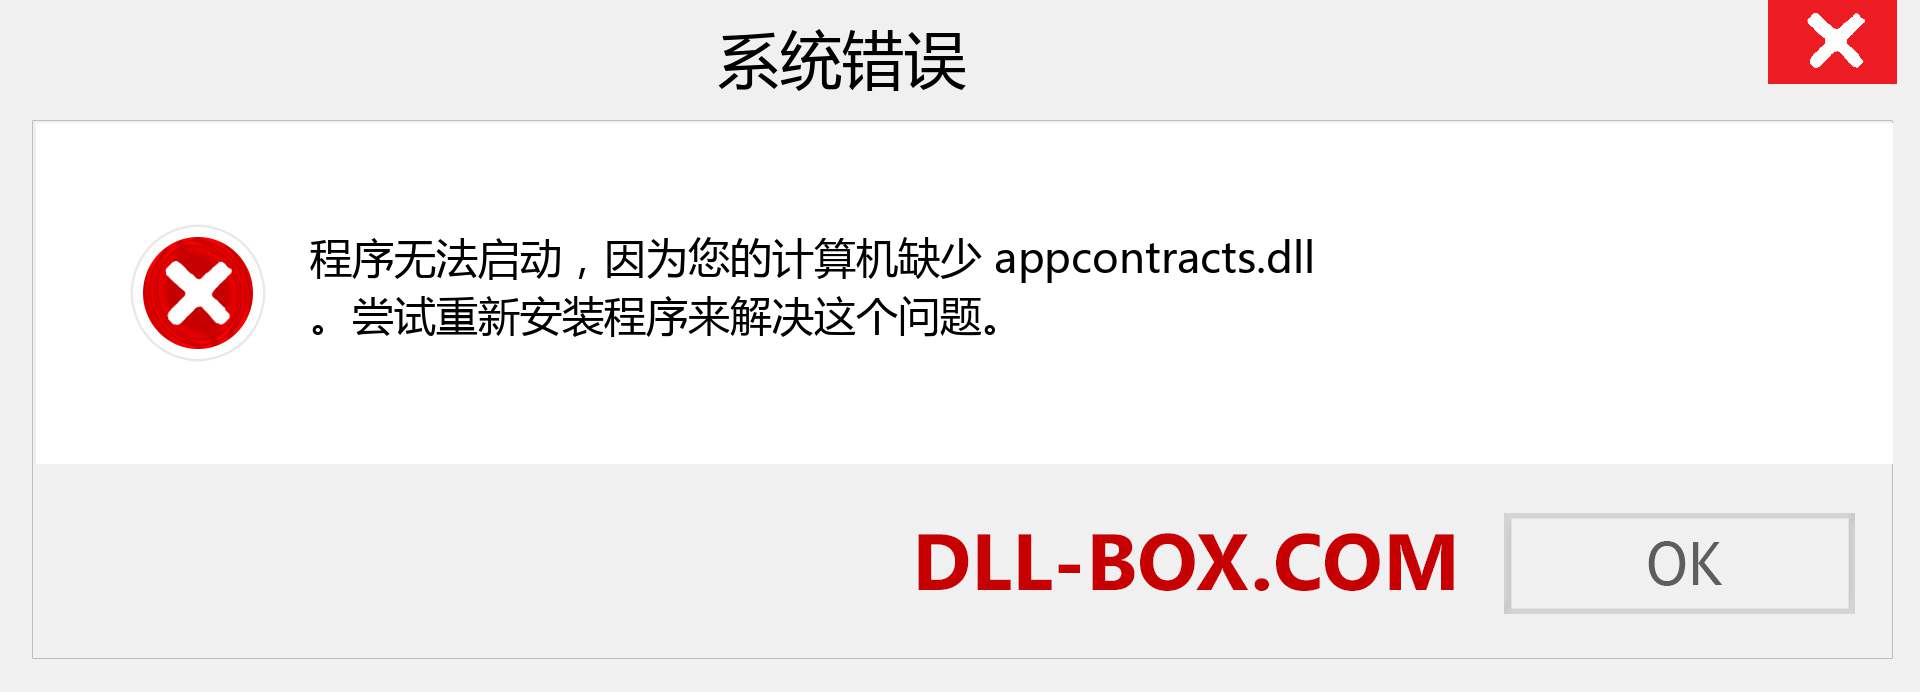 appcontracts.dll 文件丢失？。 适用于 Windows 7、8、10 的下载 - 修复 Windows、照片、图像上的 appcontracts dll 丢失错误